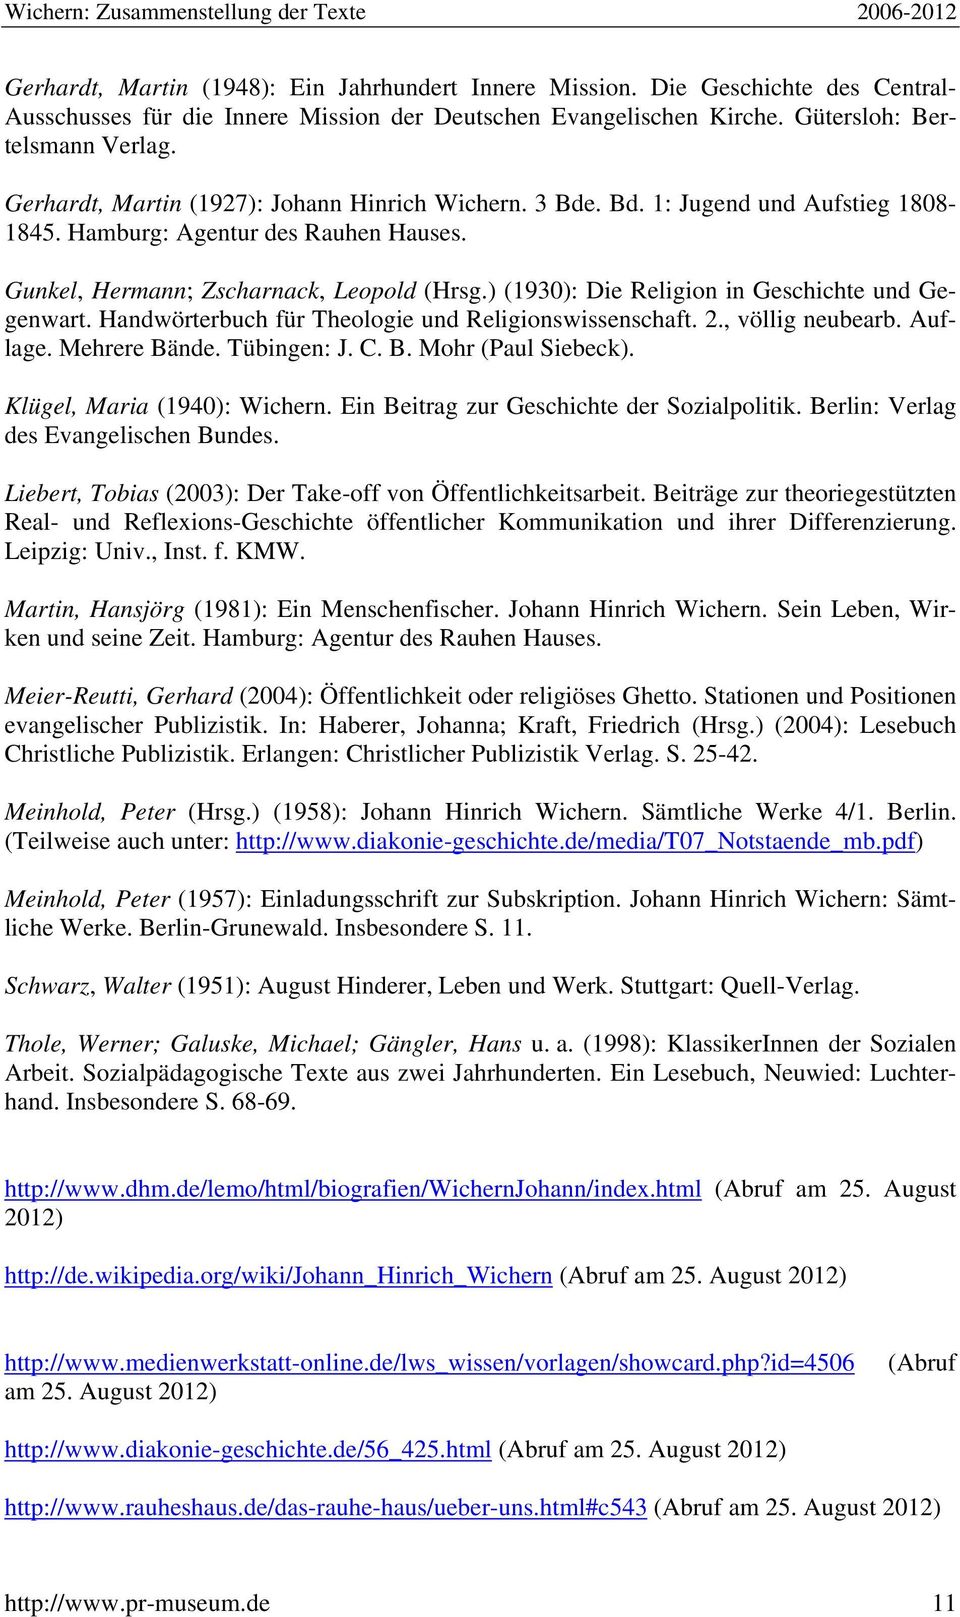 ) (1930): Die Religion in Geschichte und Gegenwart. Handwörterbuch für Theologie und Religionswissenschaft. 2., völlig neubearb. Auflage. Mehrere Bände. Tübingen: J. C. B. Mohr (Paul Siebeck).